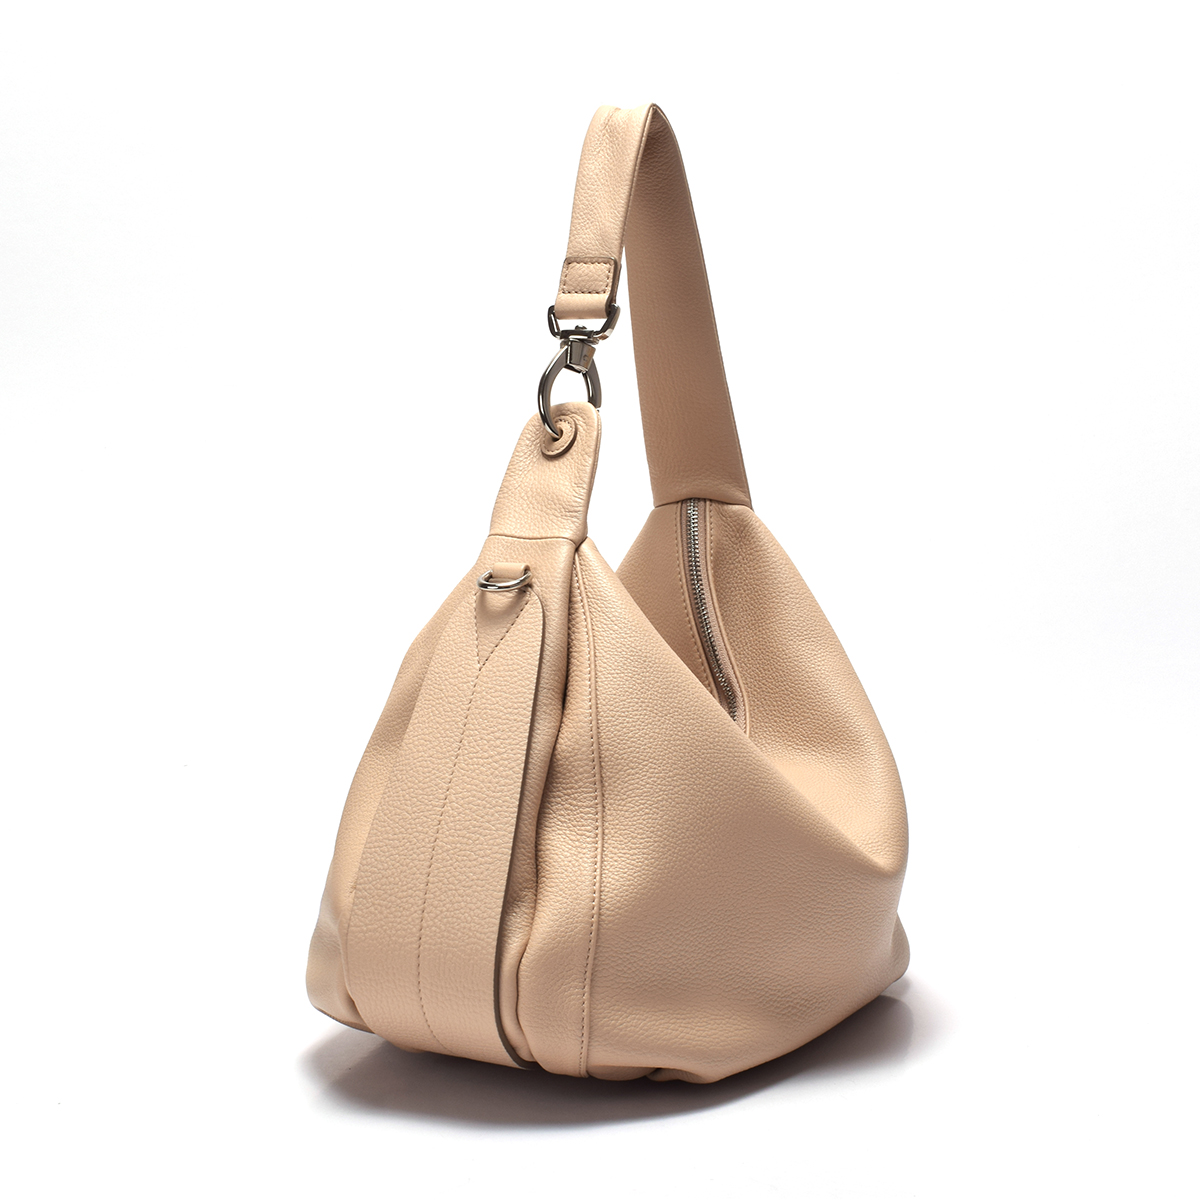 Sanlly design designer side bag Suppliers for women-2